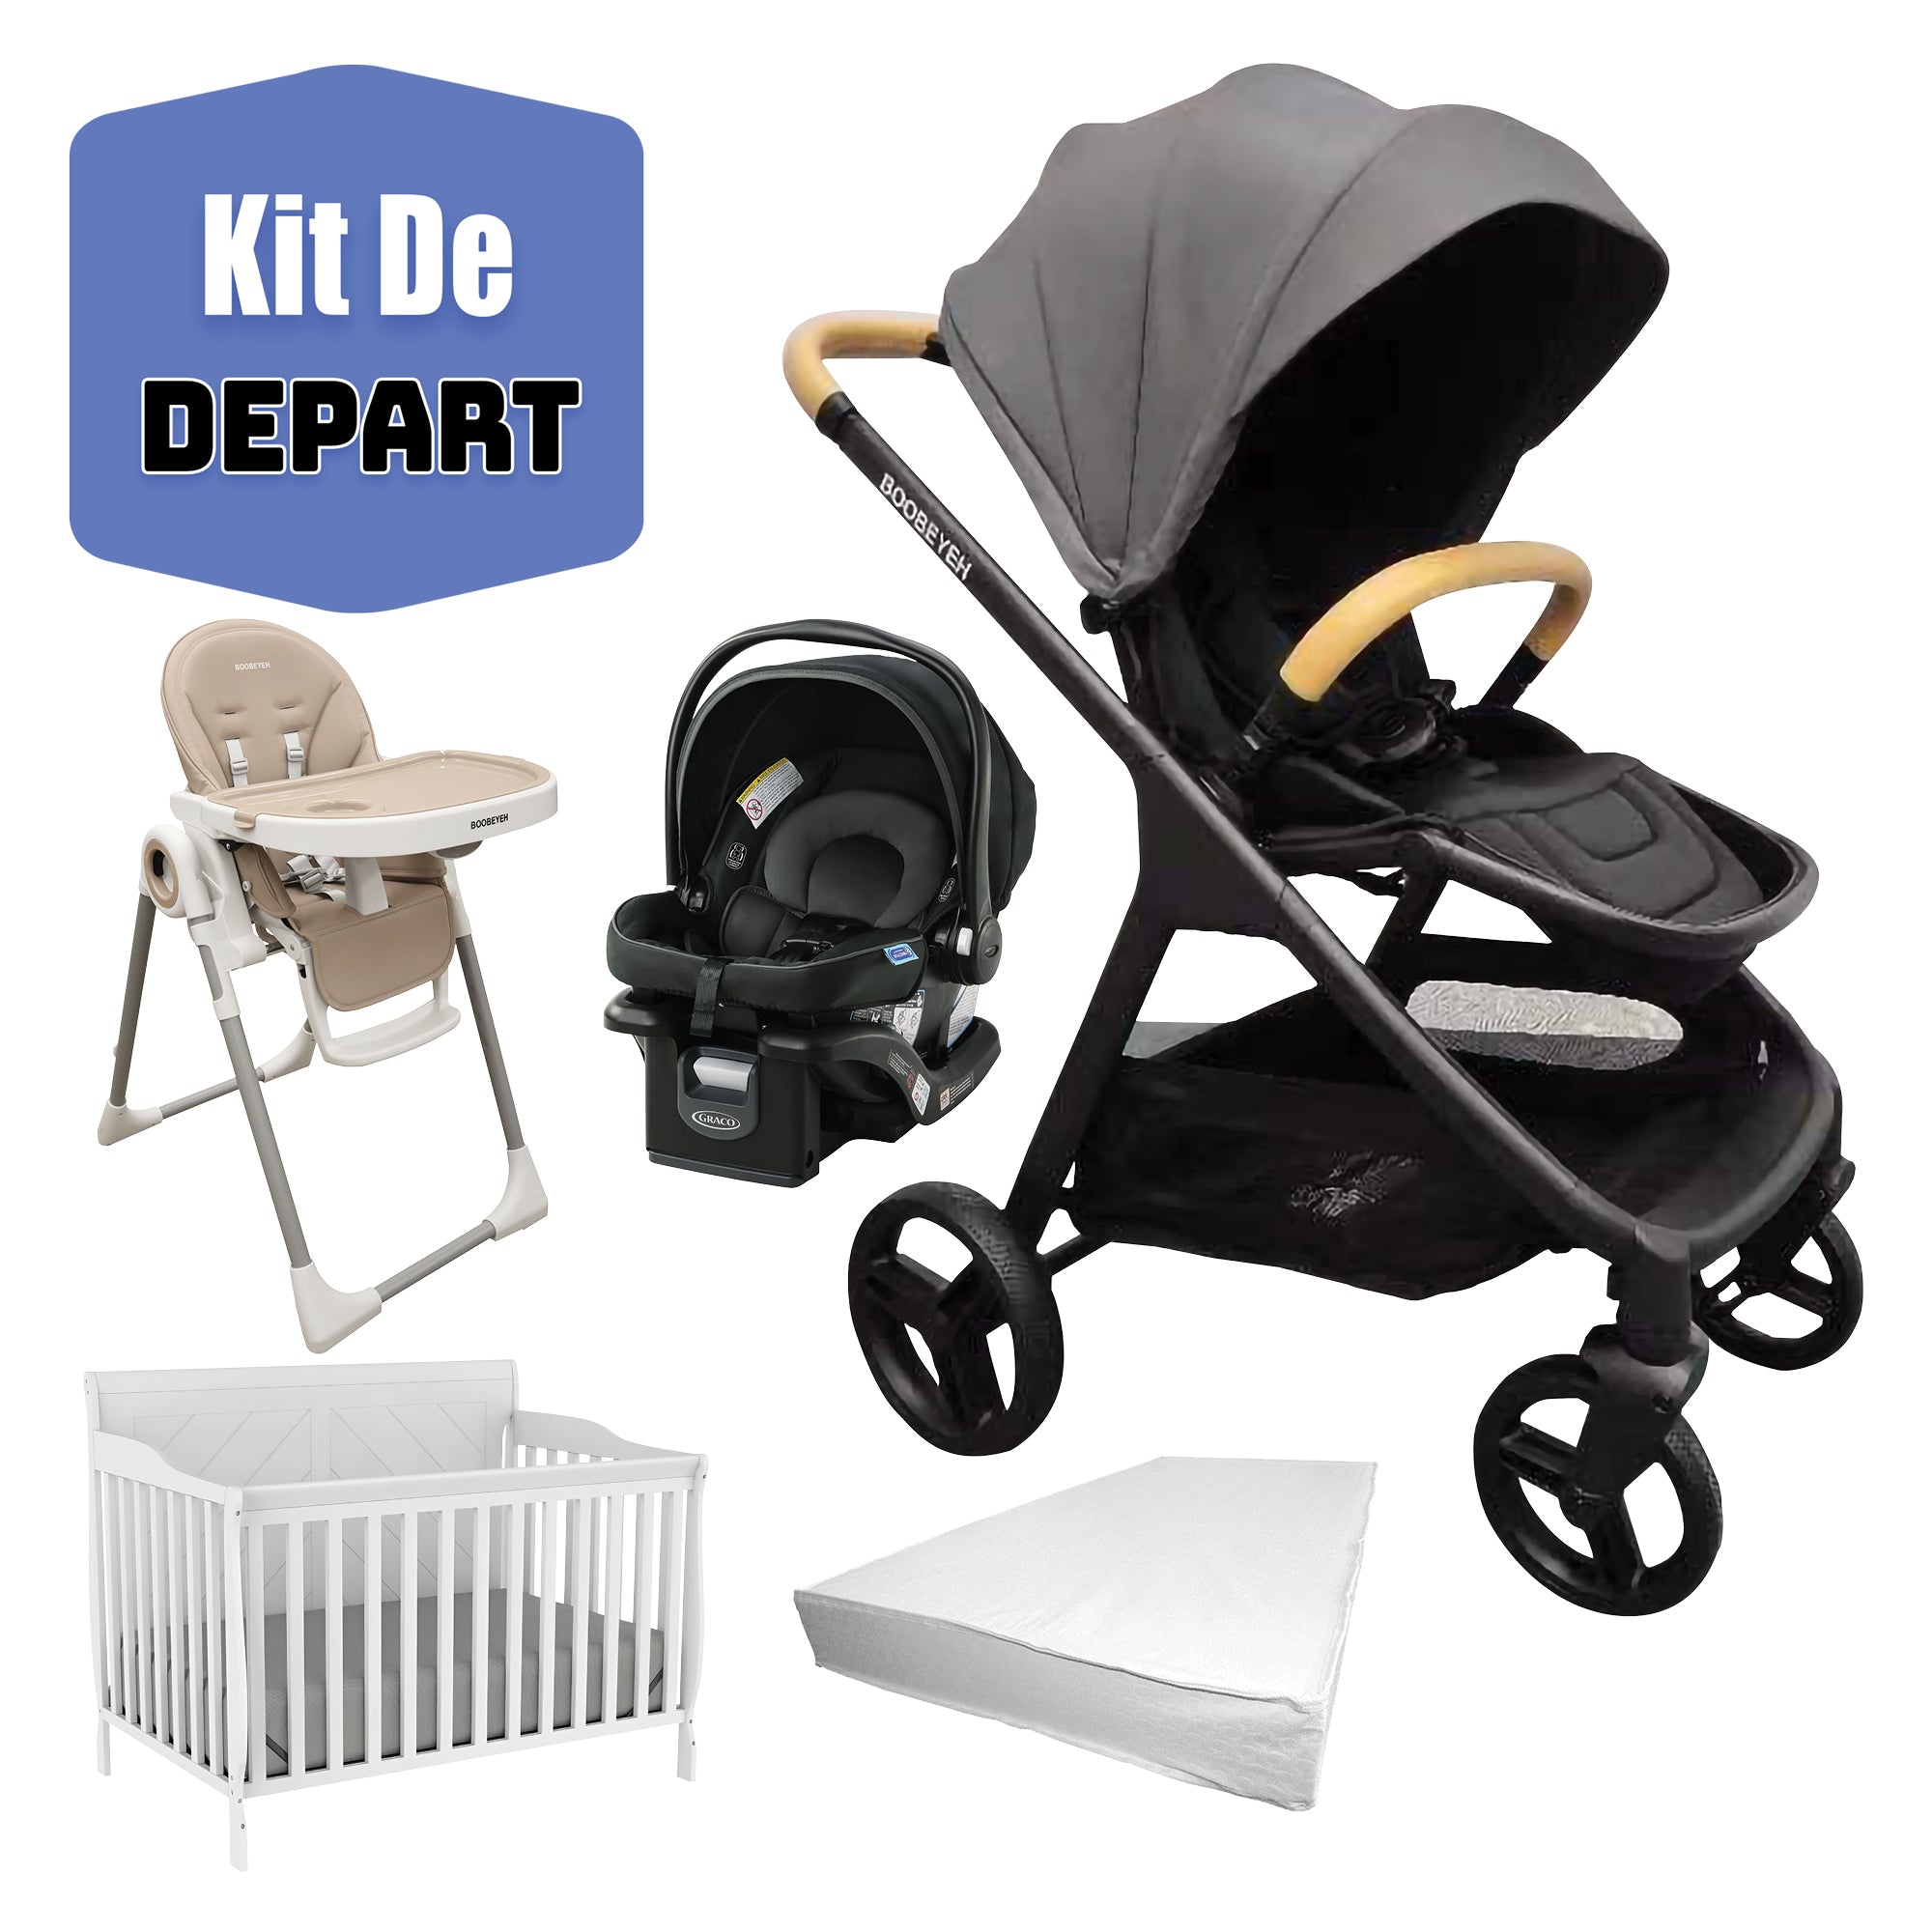 Kit de depart poussette Boobeyeh, siège auto Graco, chaise haute boobeyeh, lit de bébé et matelas de base